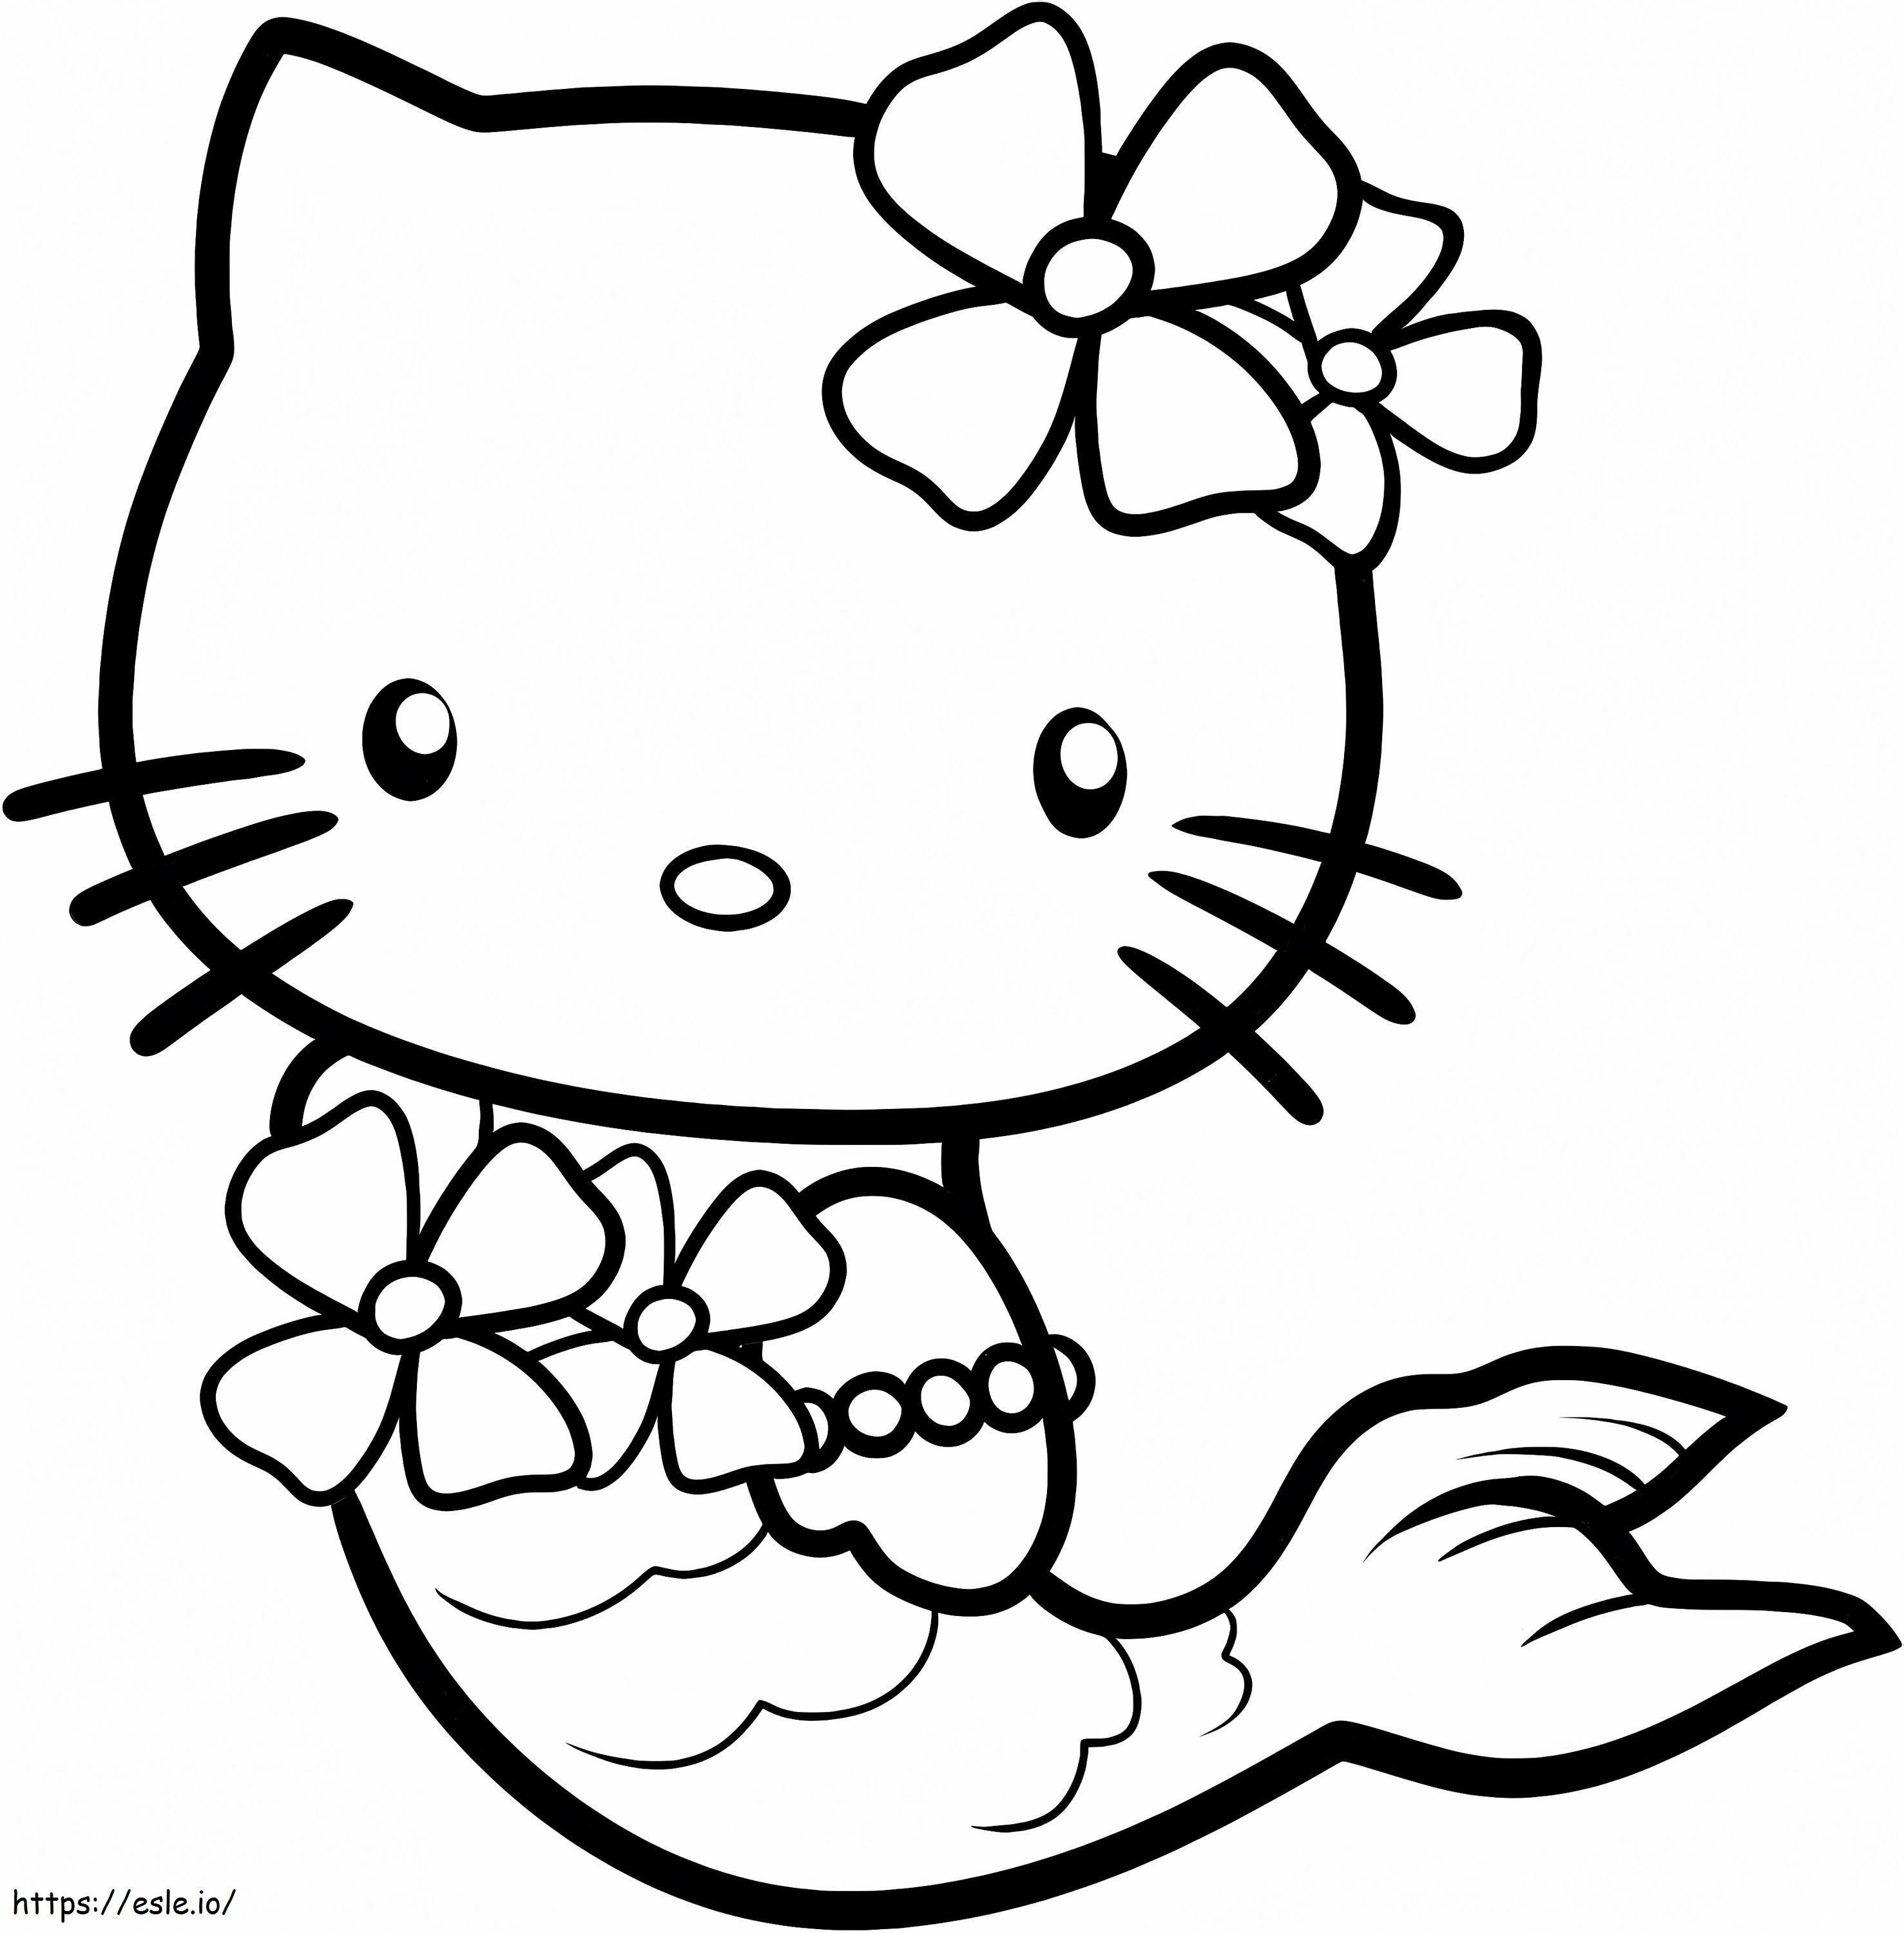 1539941740 Kitty Hello Kitty Sirene Darmowe strony dla dzieci w 6 zdjęciach Karafbistro Princess Tutu kolorowanka